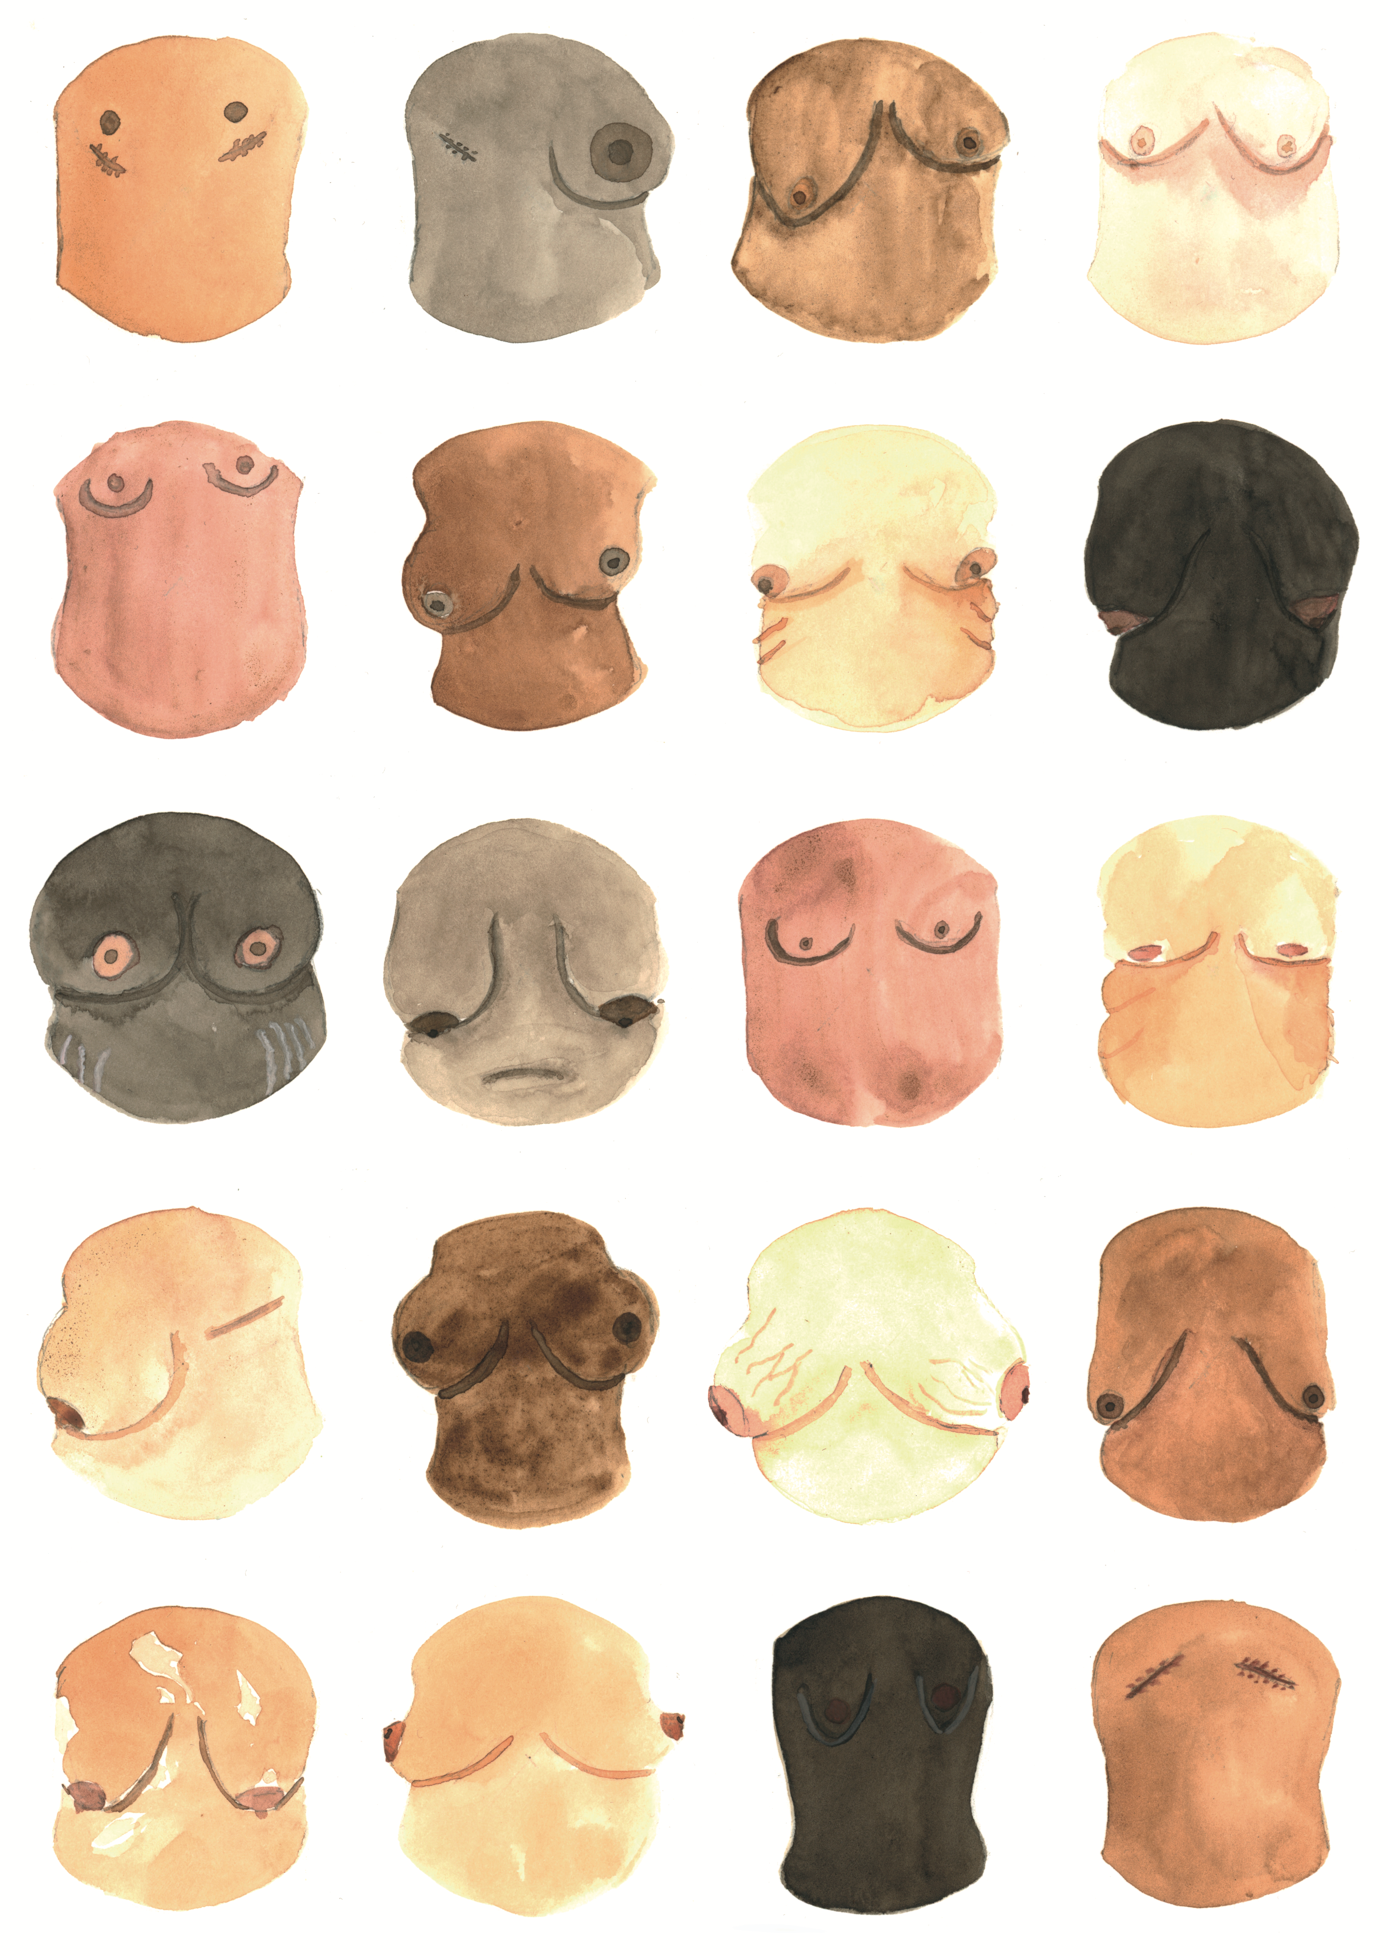 1000-teiliges Puzzle für Erwachsene, das Brüste in allen Formen und Farben zeigt